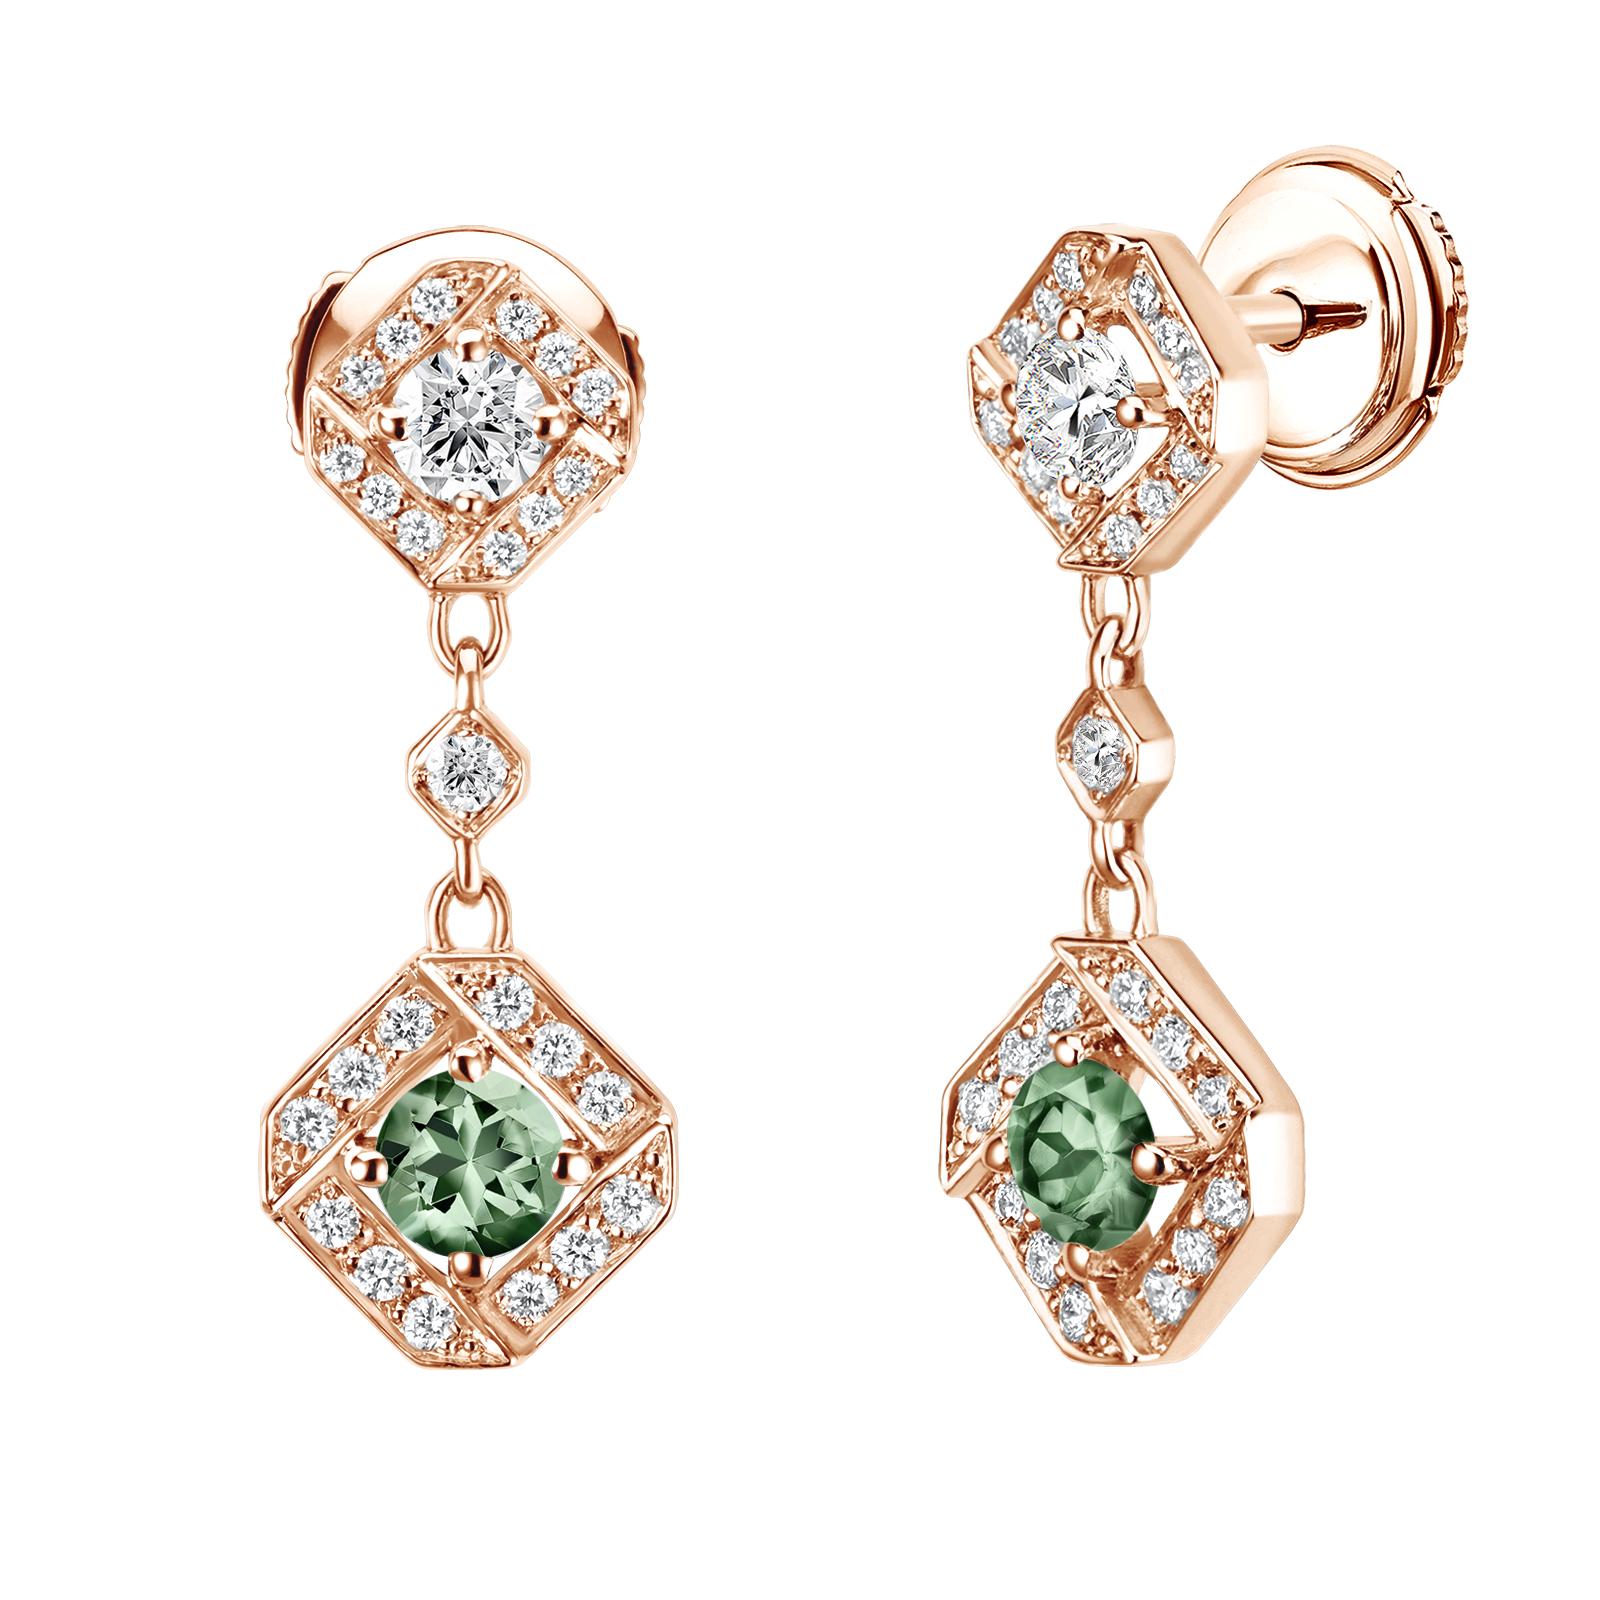 Ohrringe Roségold Grüner Saphir und diamanten Plissage 1